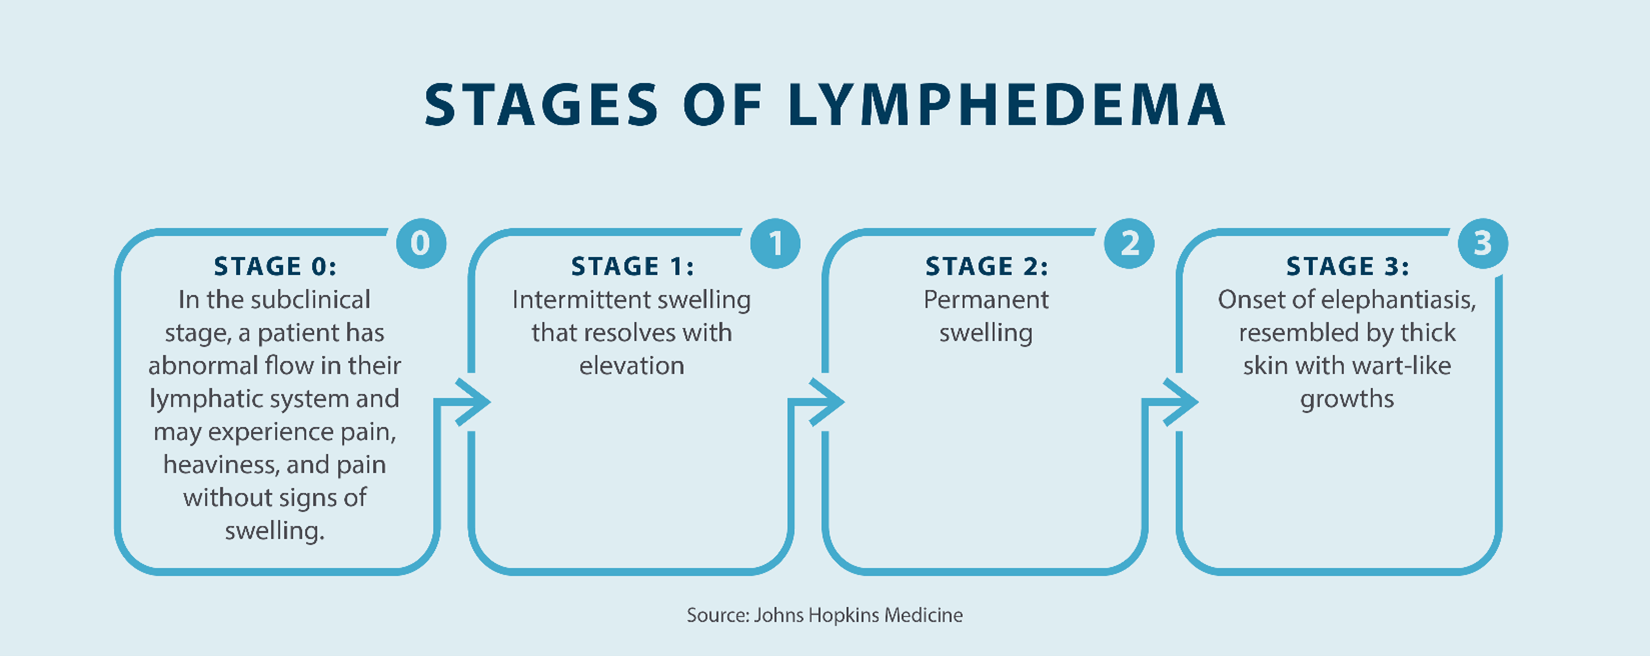 stages of lymphedema; stage 0, stage 1, stage 2, stage 3